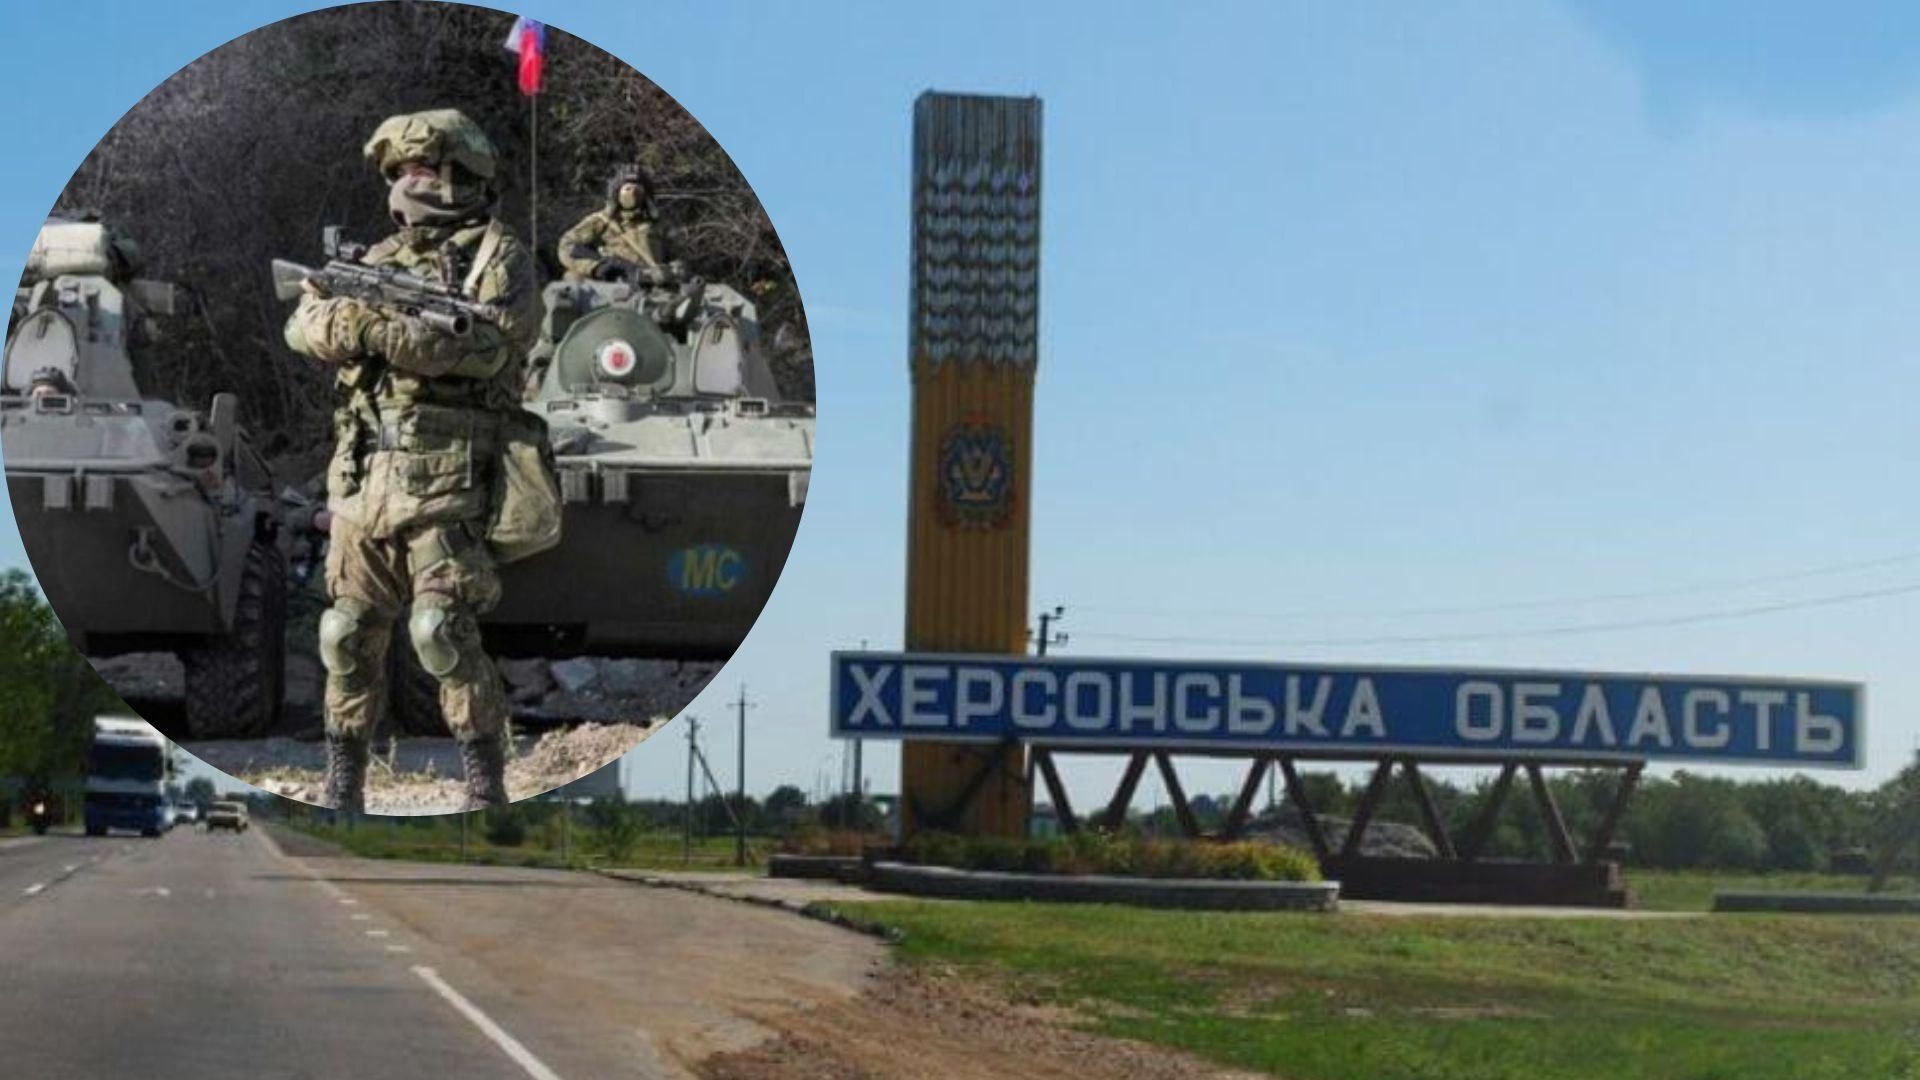 Двовалютна зона, залізниця в Крим, громадянство: чим "обробляють" населення Херсонщини окупанти